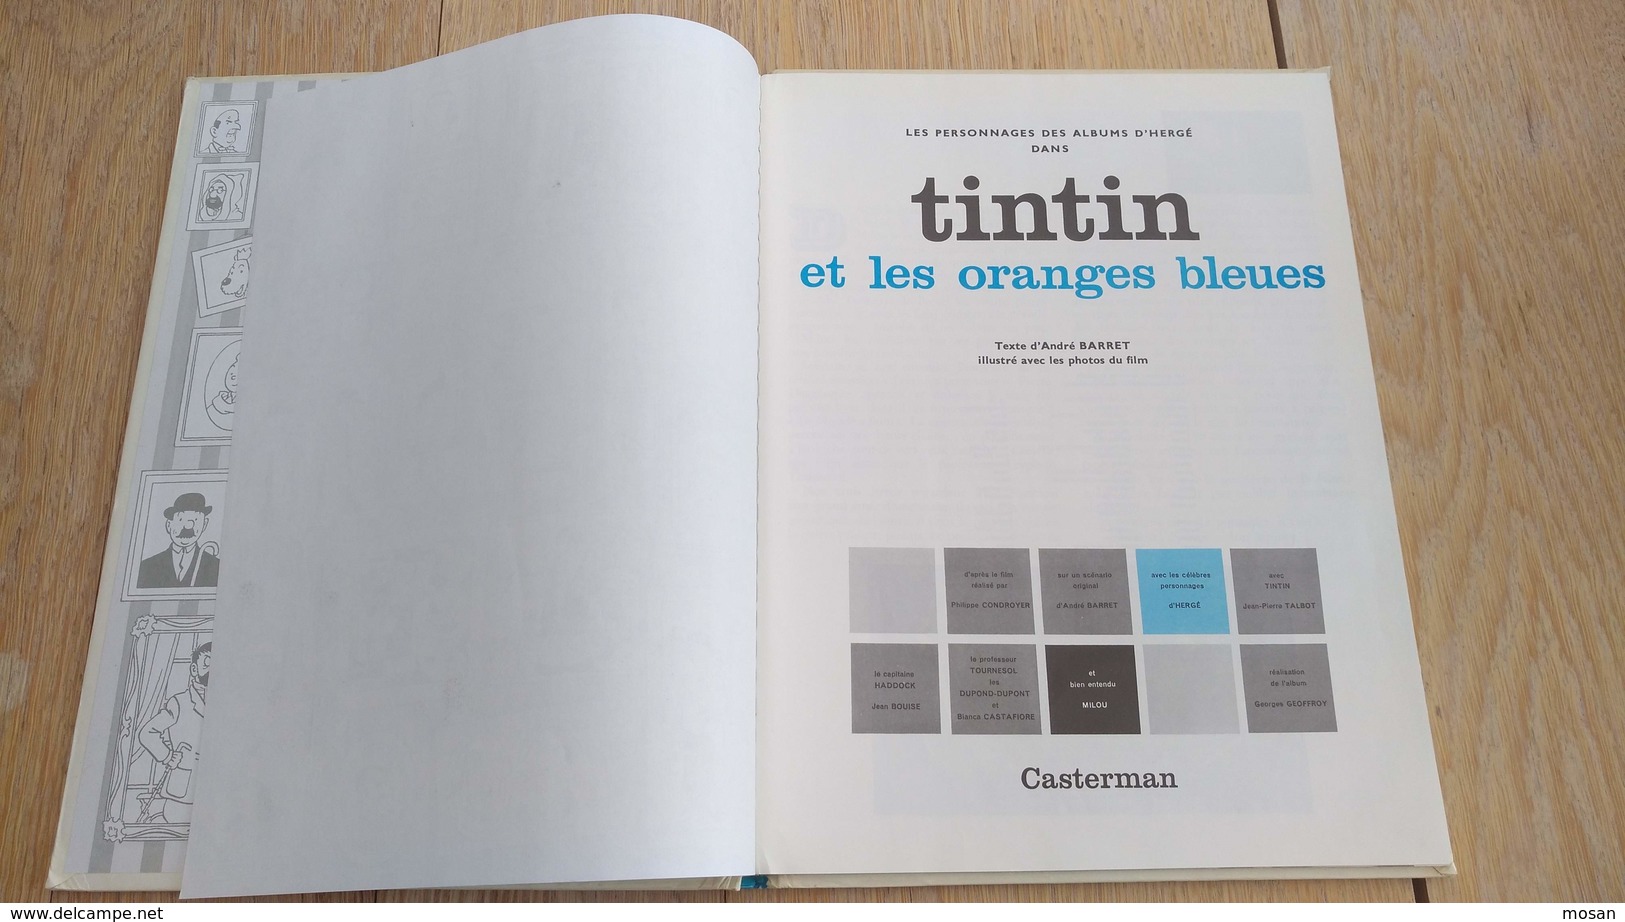 Tintin et les oranges bleues. Album film. D'après l'oeuvre de Hergé. Texte d'André Barret